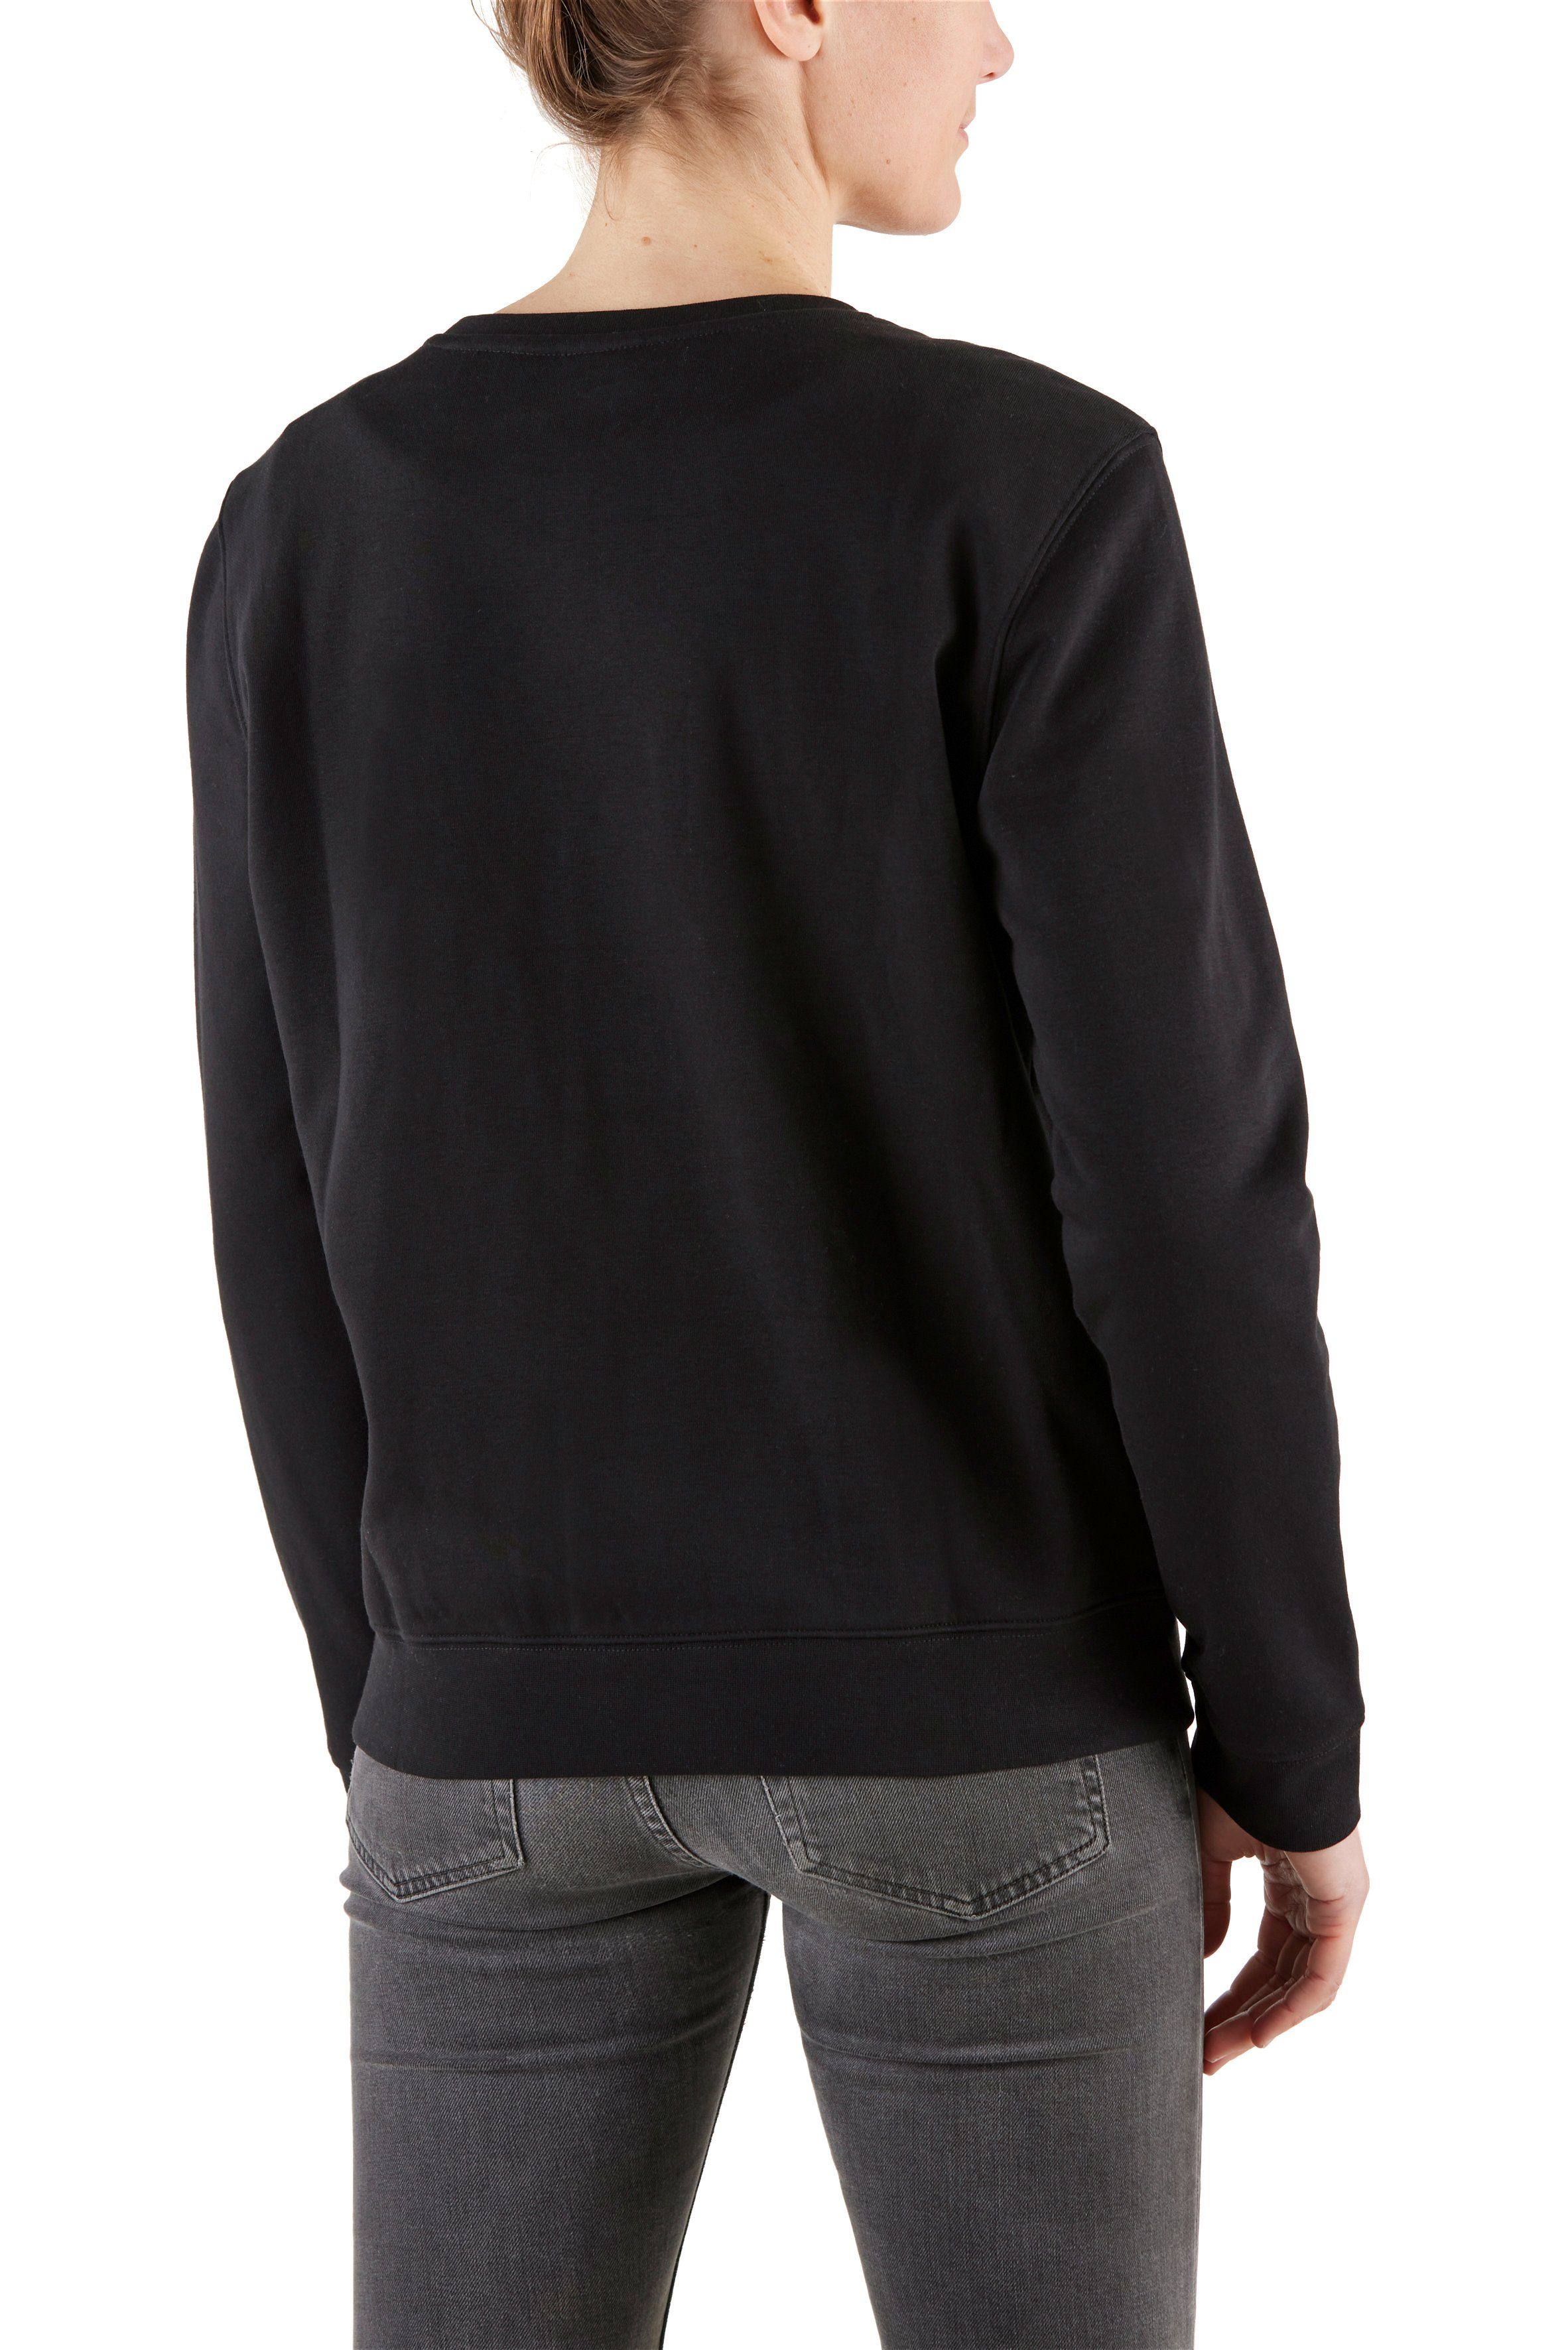 leicht und Damen locker Baumwollmix, sich Sweatshirt für Country soften aus trägt Northern BlackBeauty